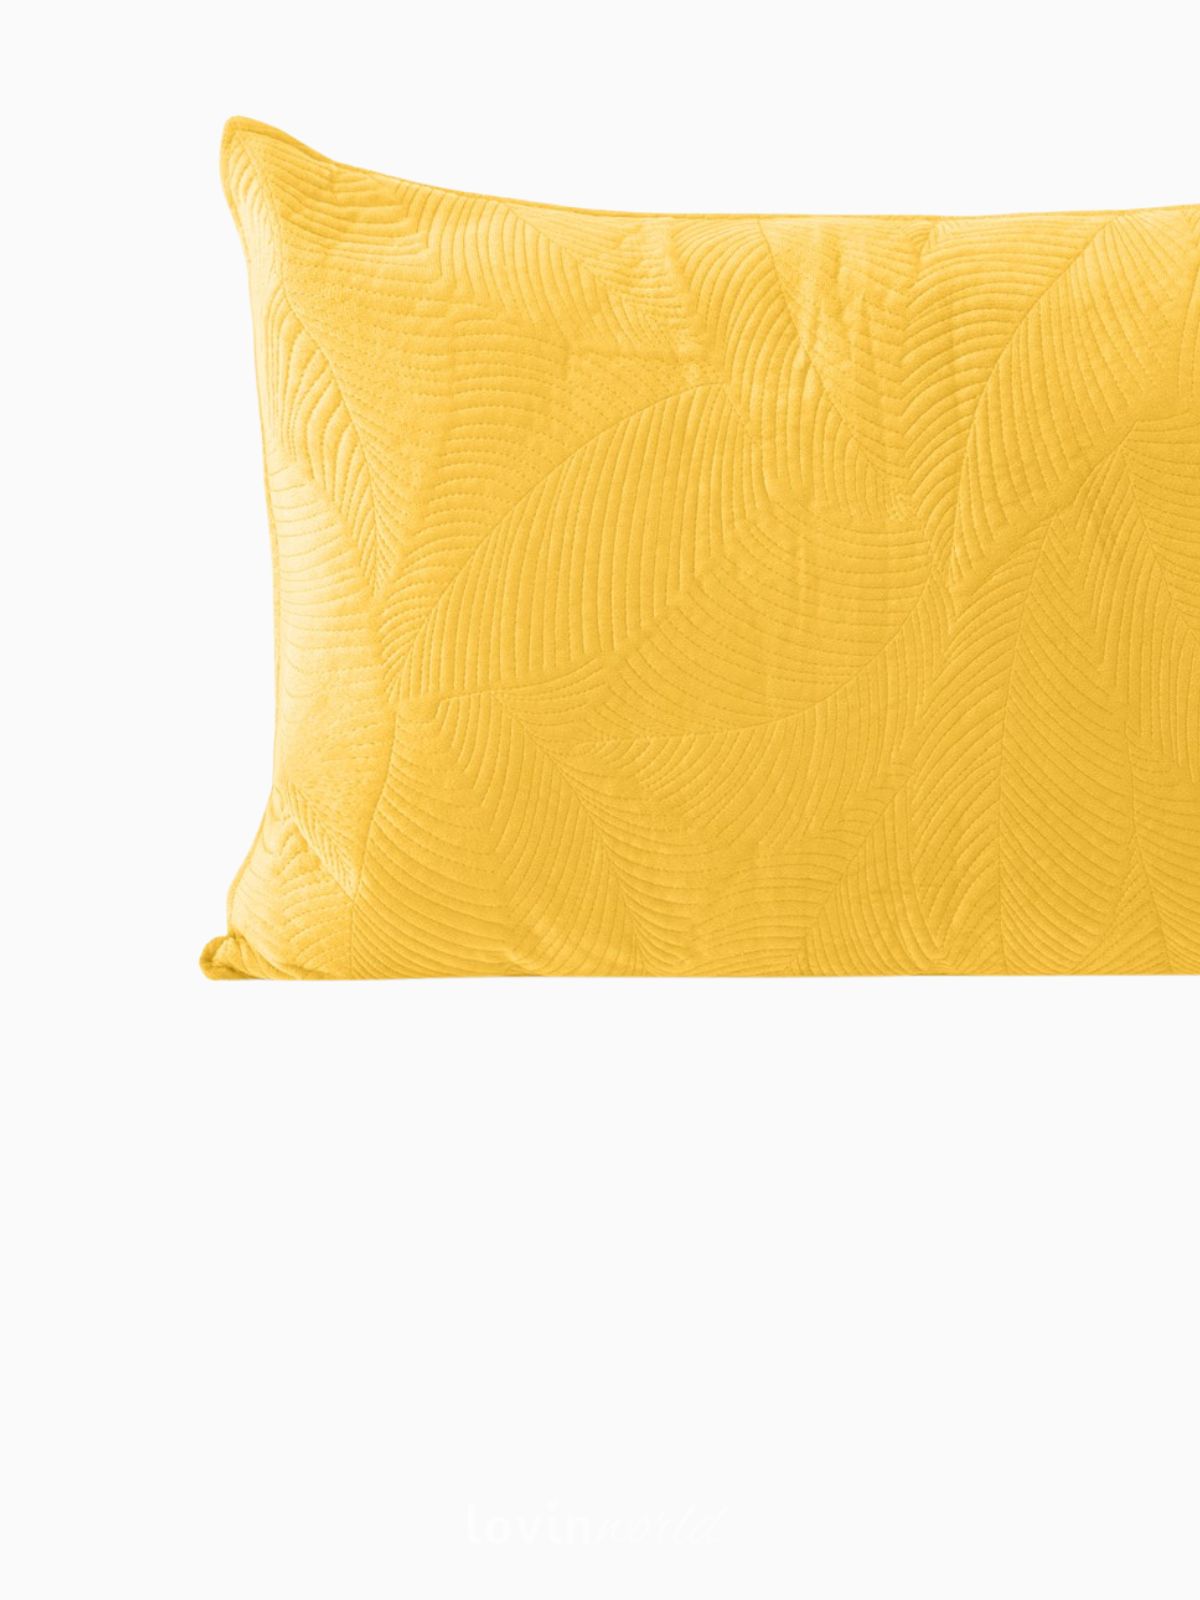 Cuscino decorativo in velluto Palsha, colore giallo 50x70 cm.-3